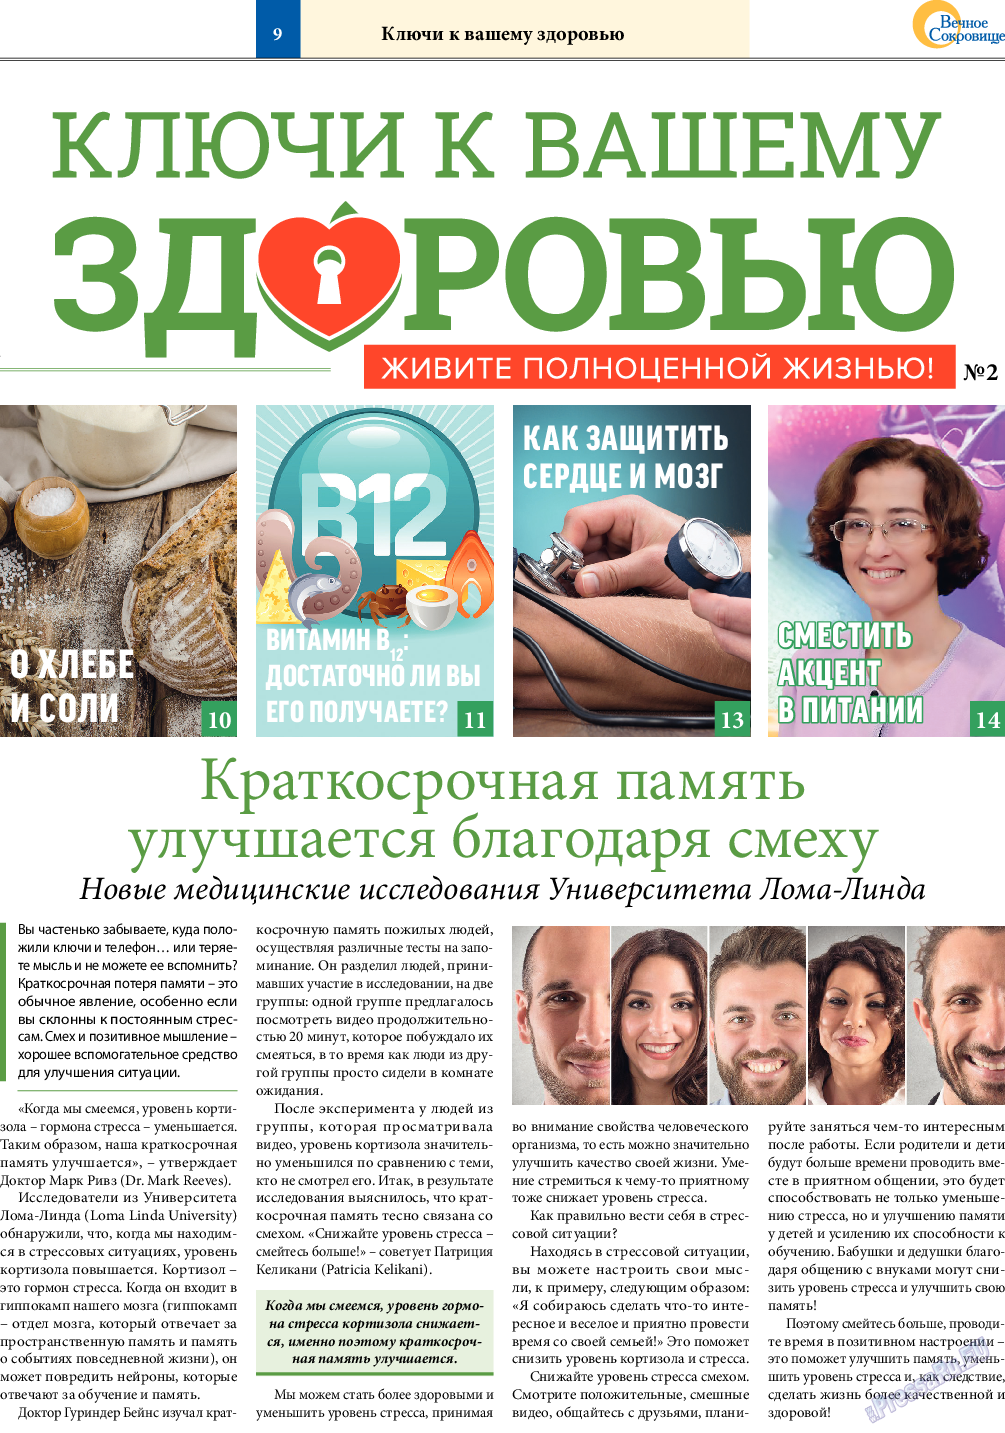 Вечное сокровище (газета). 2018 год, номер 5, стр. 9